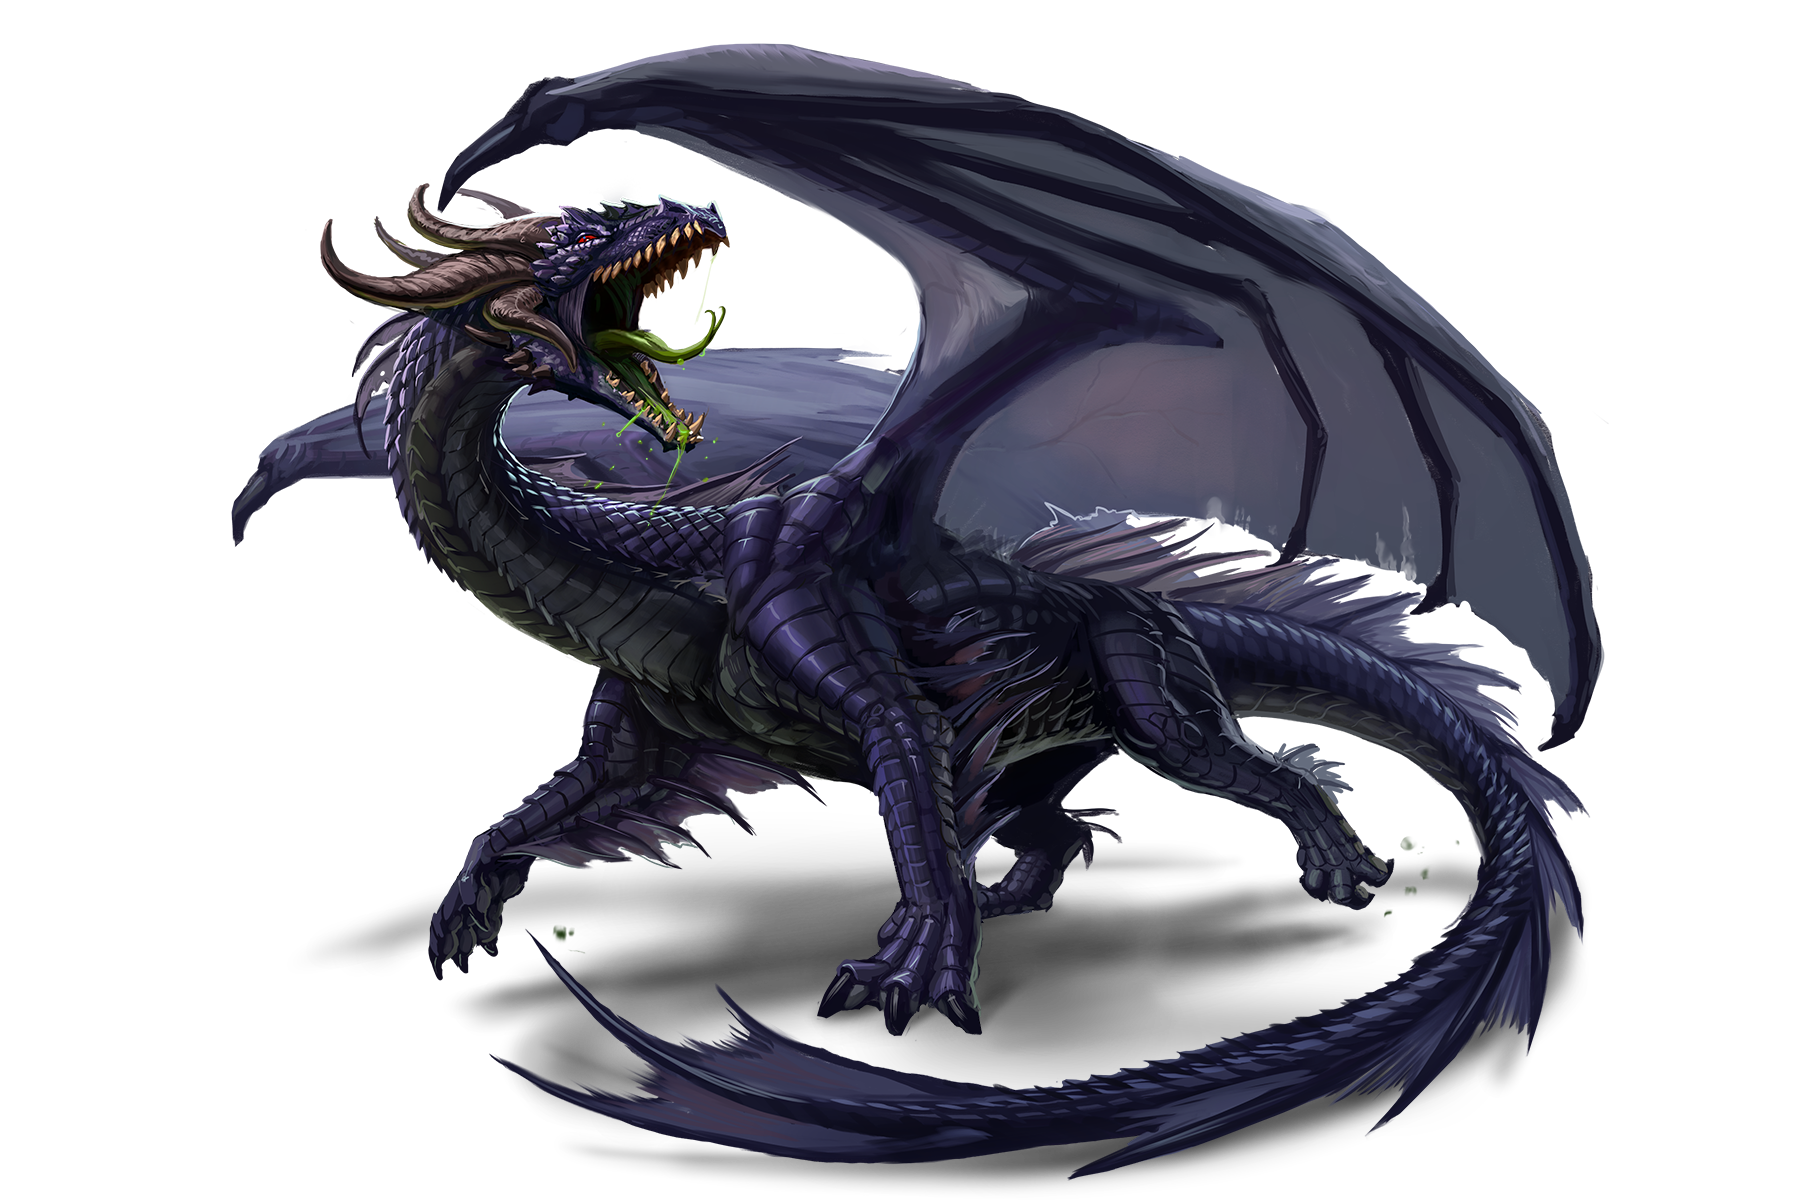 A large black dragon